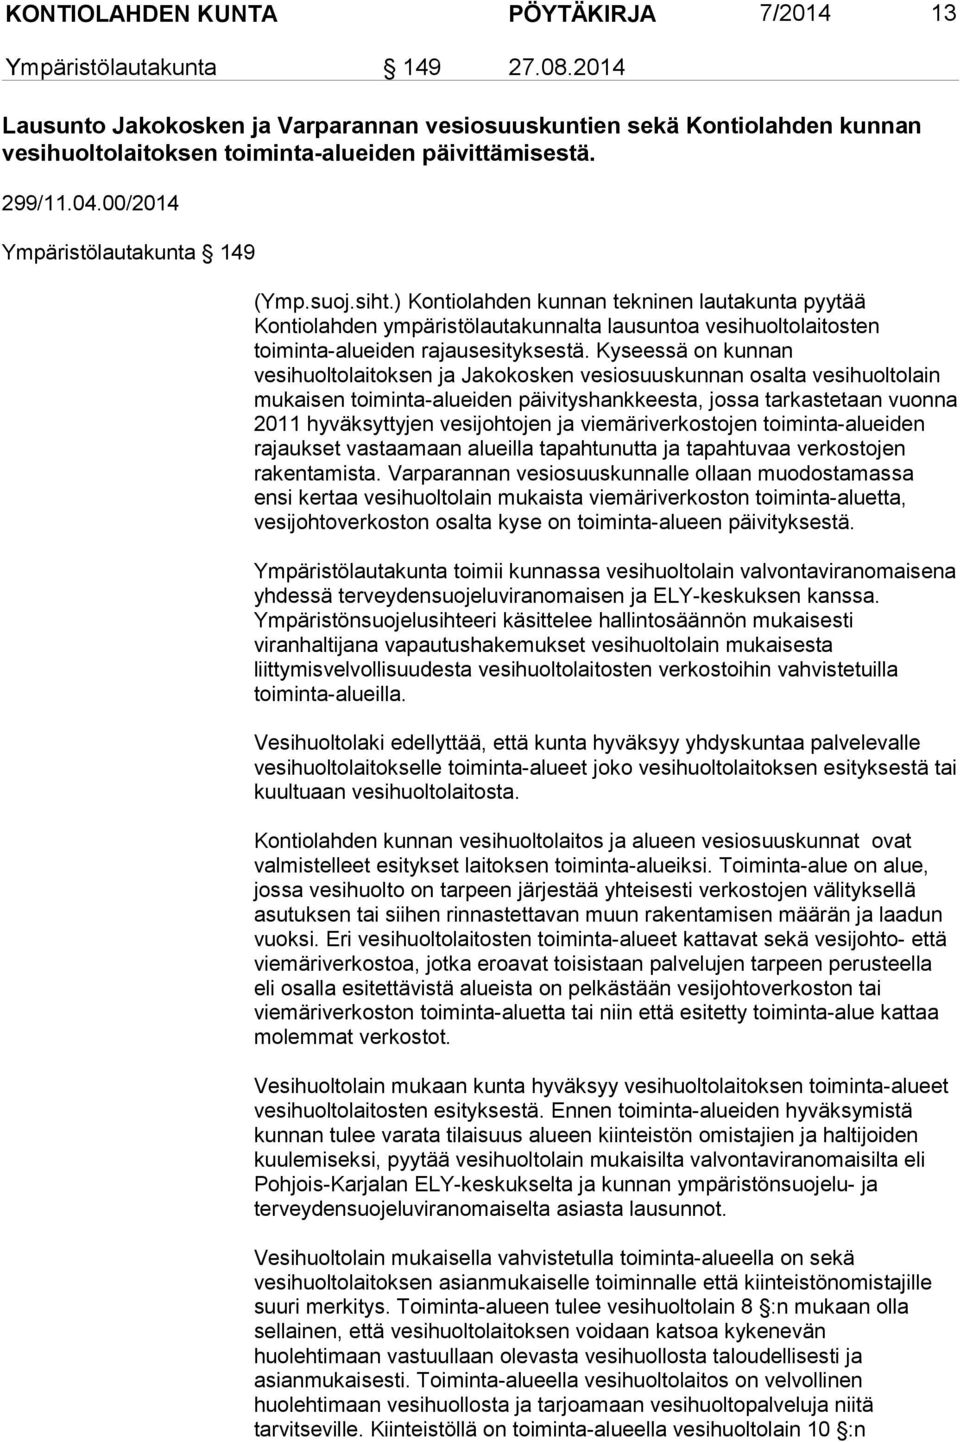 ) Kontiolahden kunnan tekninen lautakunta pyytää Kontiolahden ympäristölautakunnalta lausuntoa vesihuoltolaitosten toiminta-alueiden rajausesityksestä.